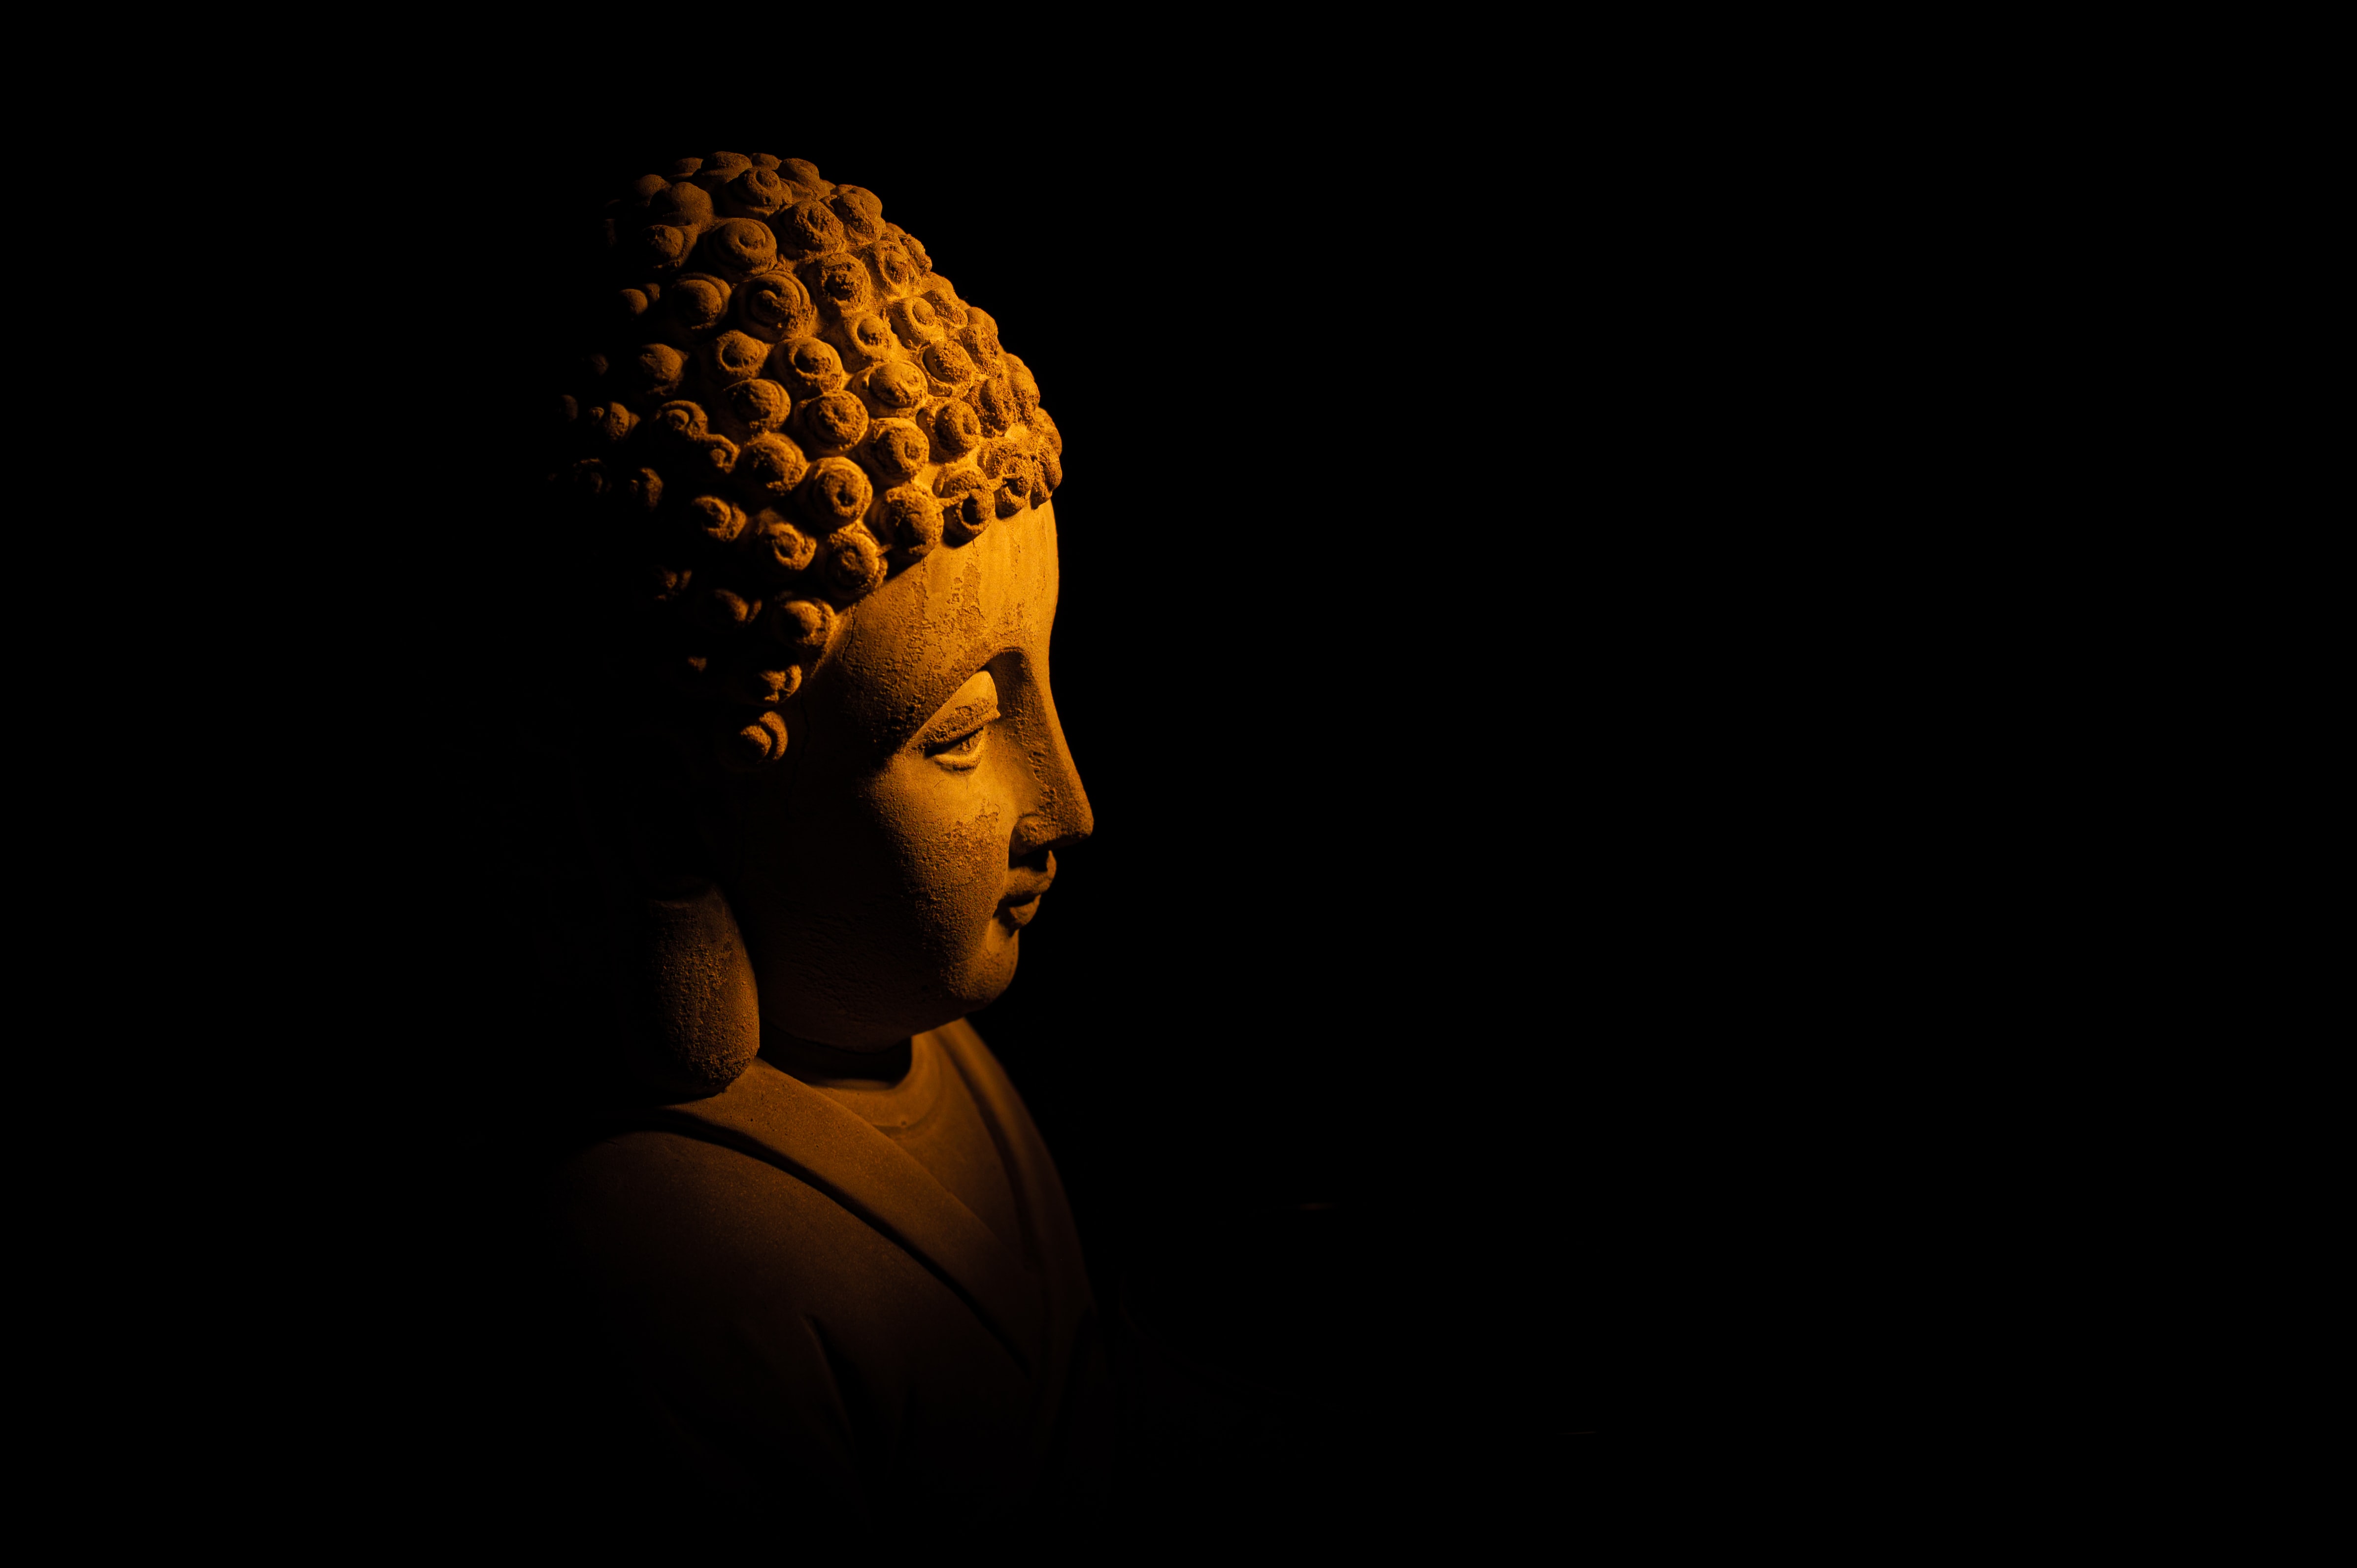 عکس مجسمه و تندیس بودا در پس زمینه مشکی با کیفیت FULL HD